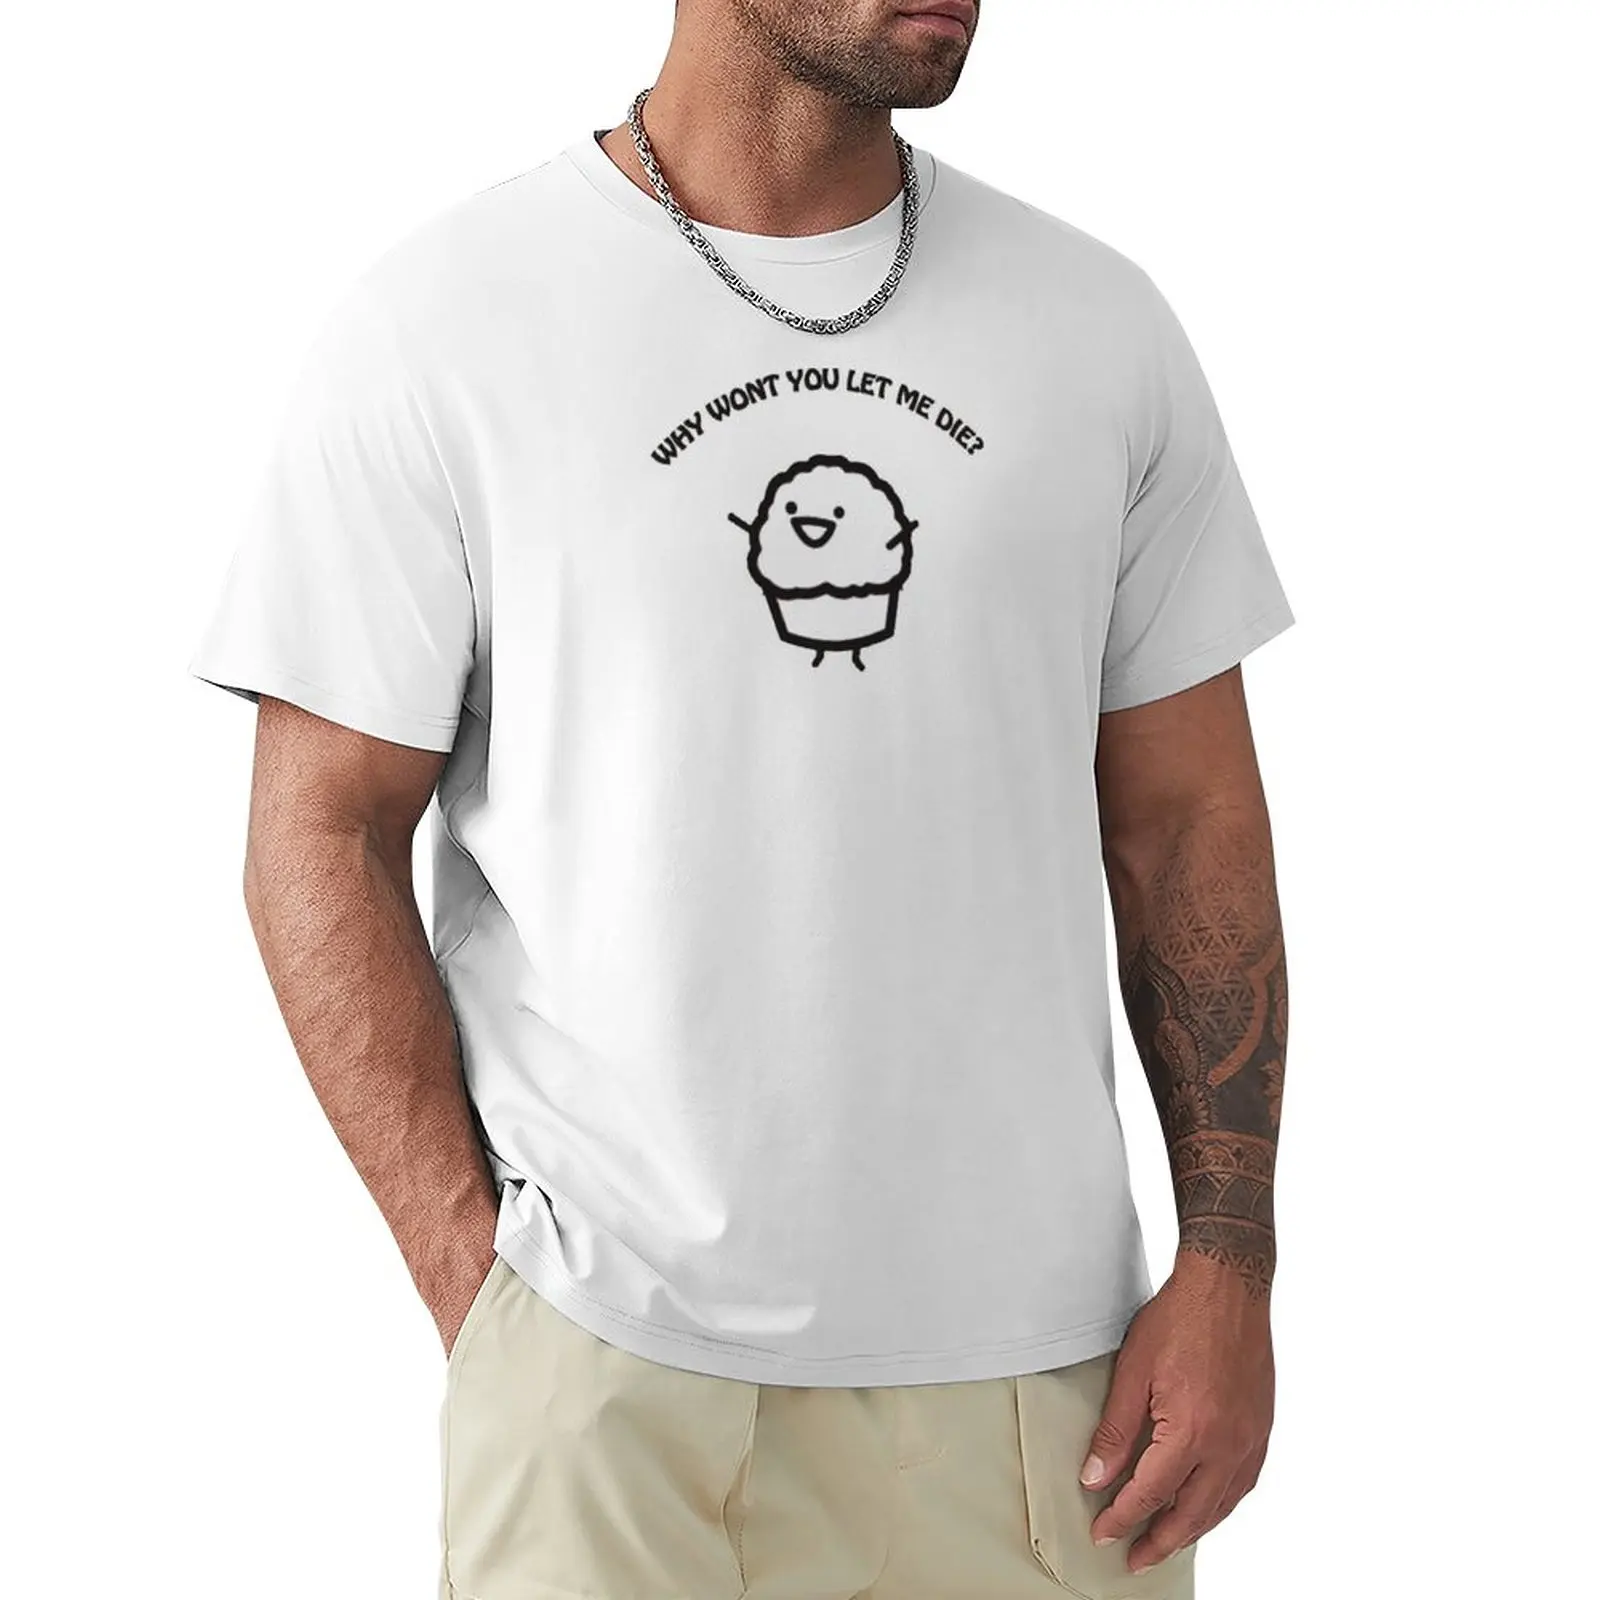 Футболка Muffin, великолепная футболка, милая одежда, однотонная футболка, футболки с графическим рисунком, футболки для мужчин, хлопок